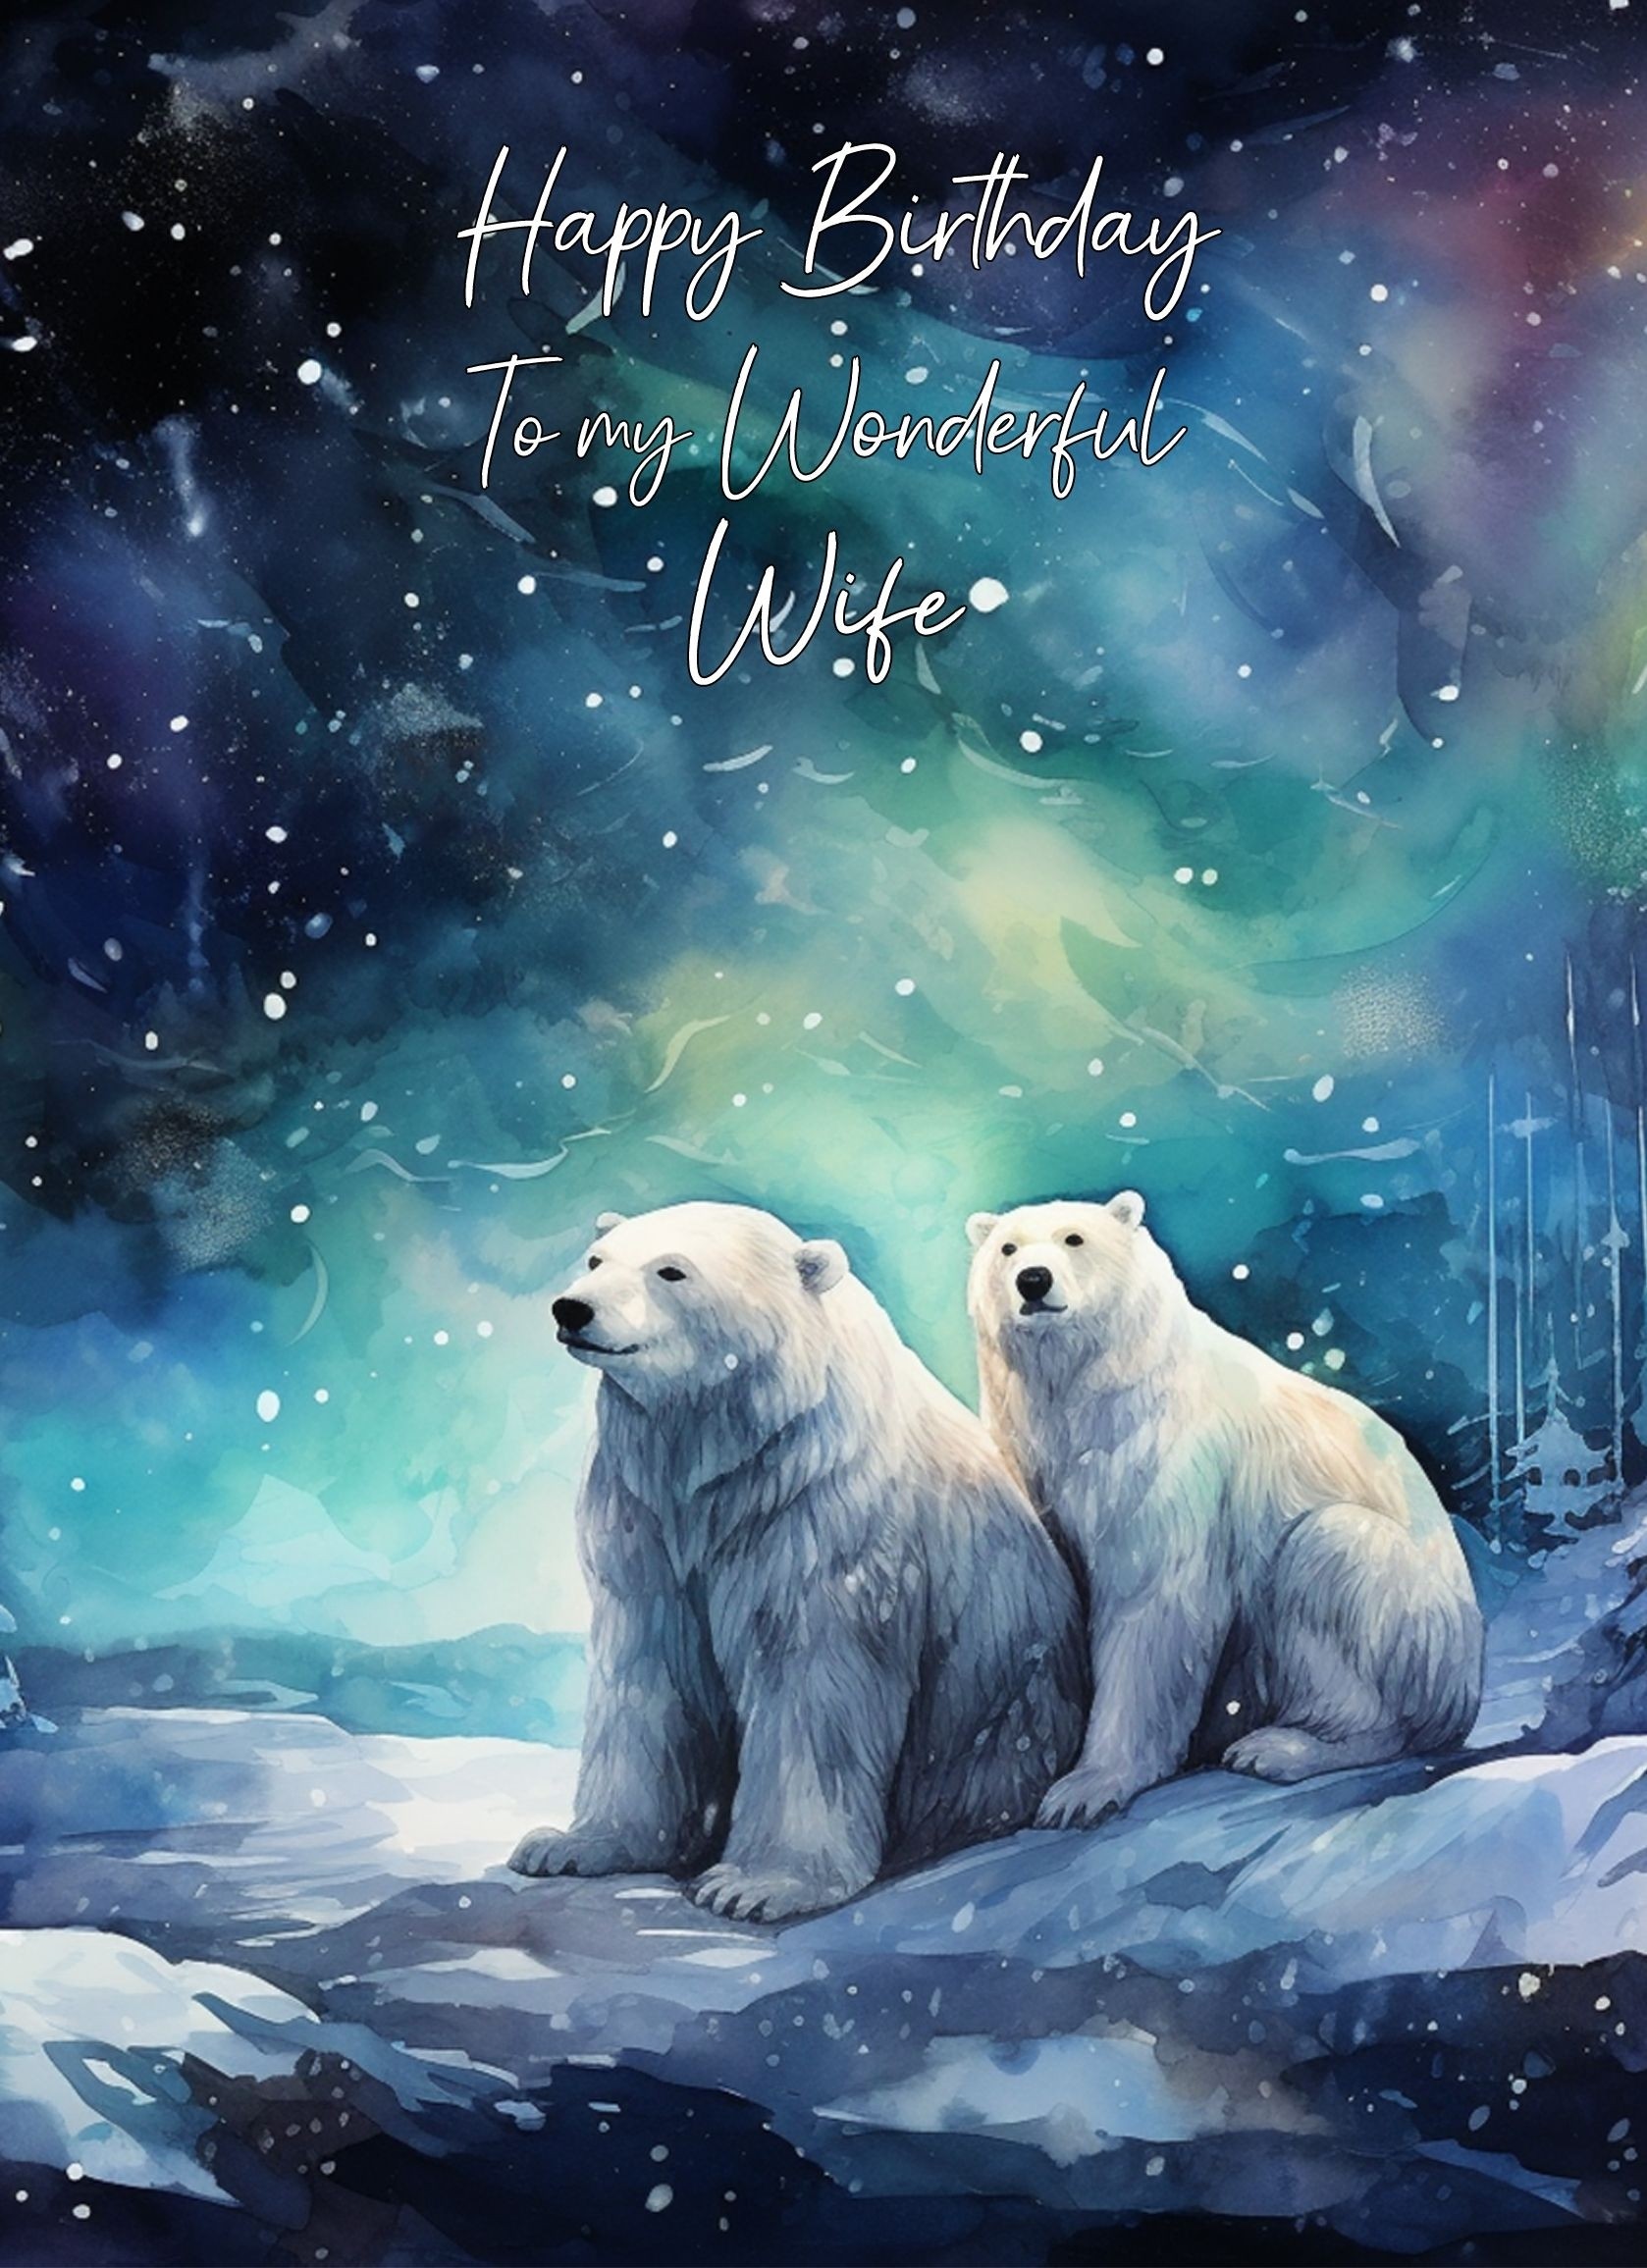 Polar Bear Art Birthday Card For Wife (Design 5)